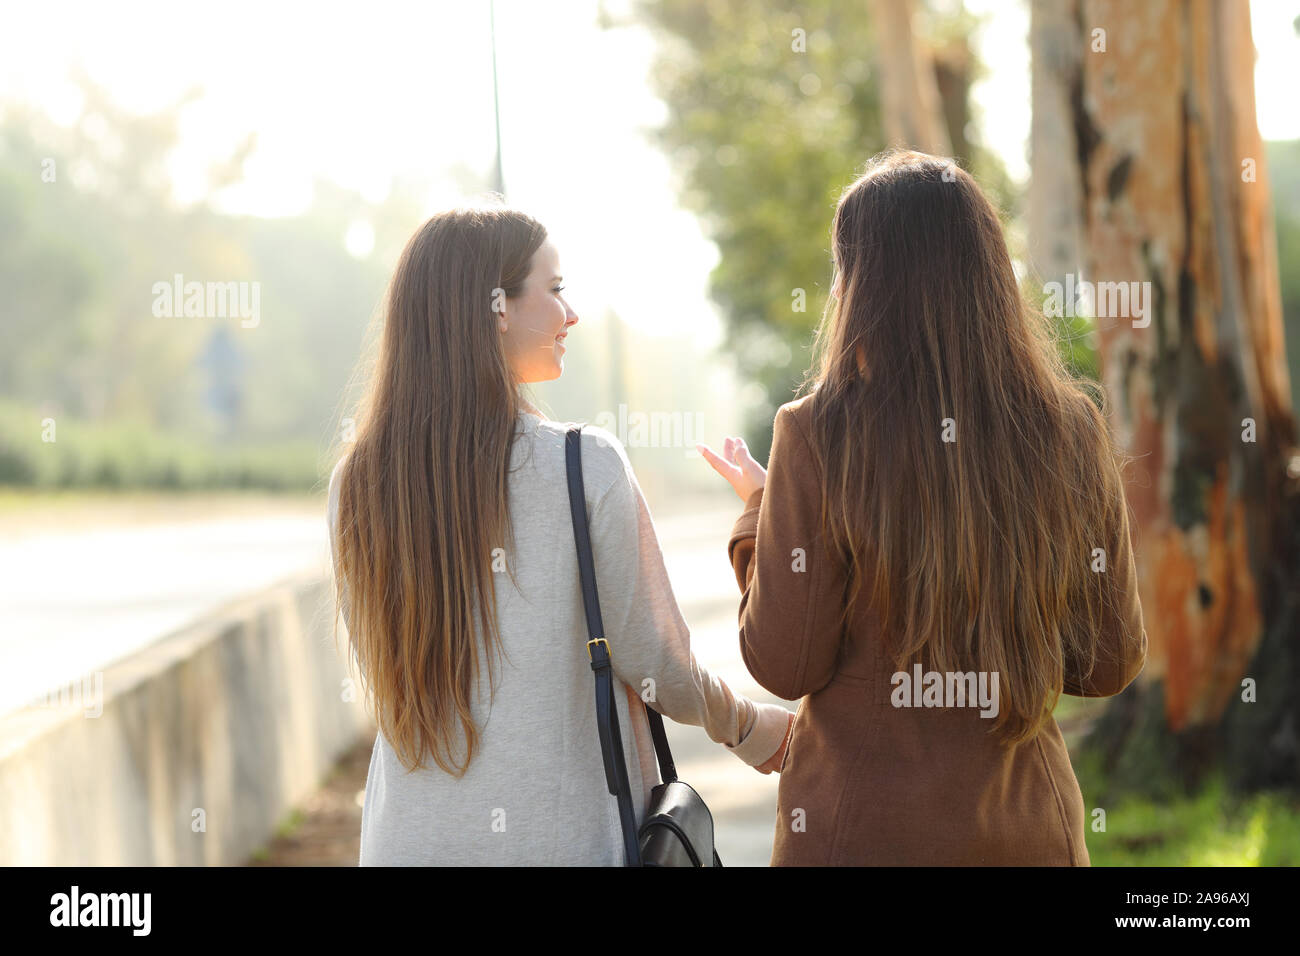 Rückansicht Porträt zweier Frauen und sprechen in einem Park asunny Tag Stockfoto